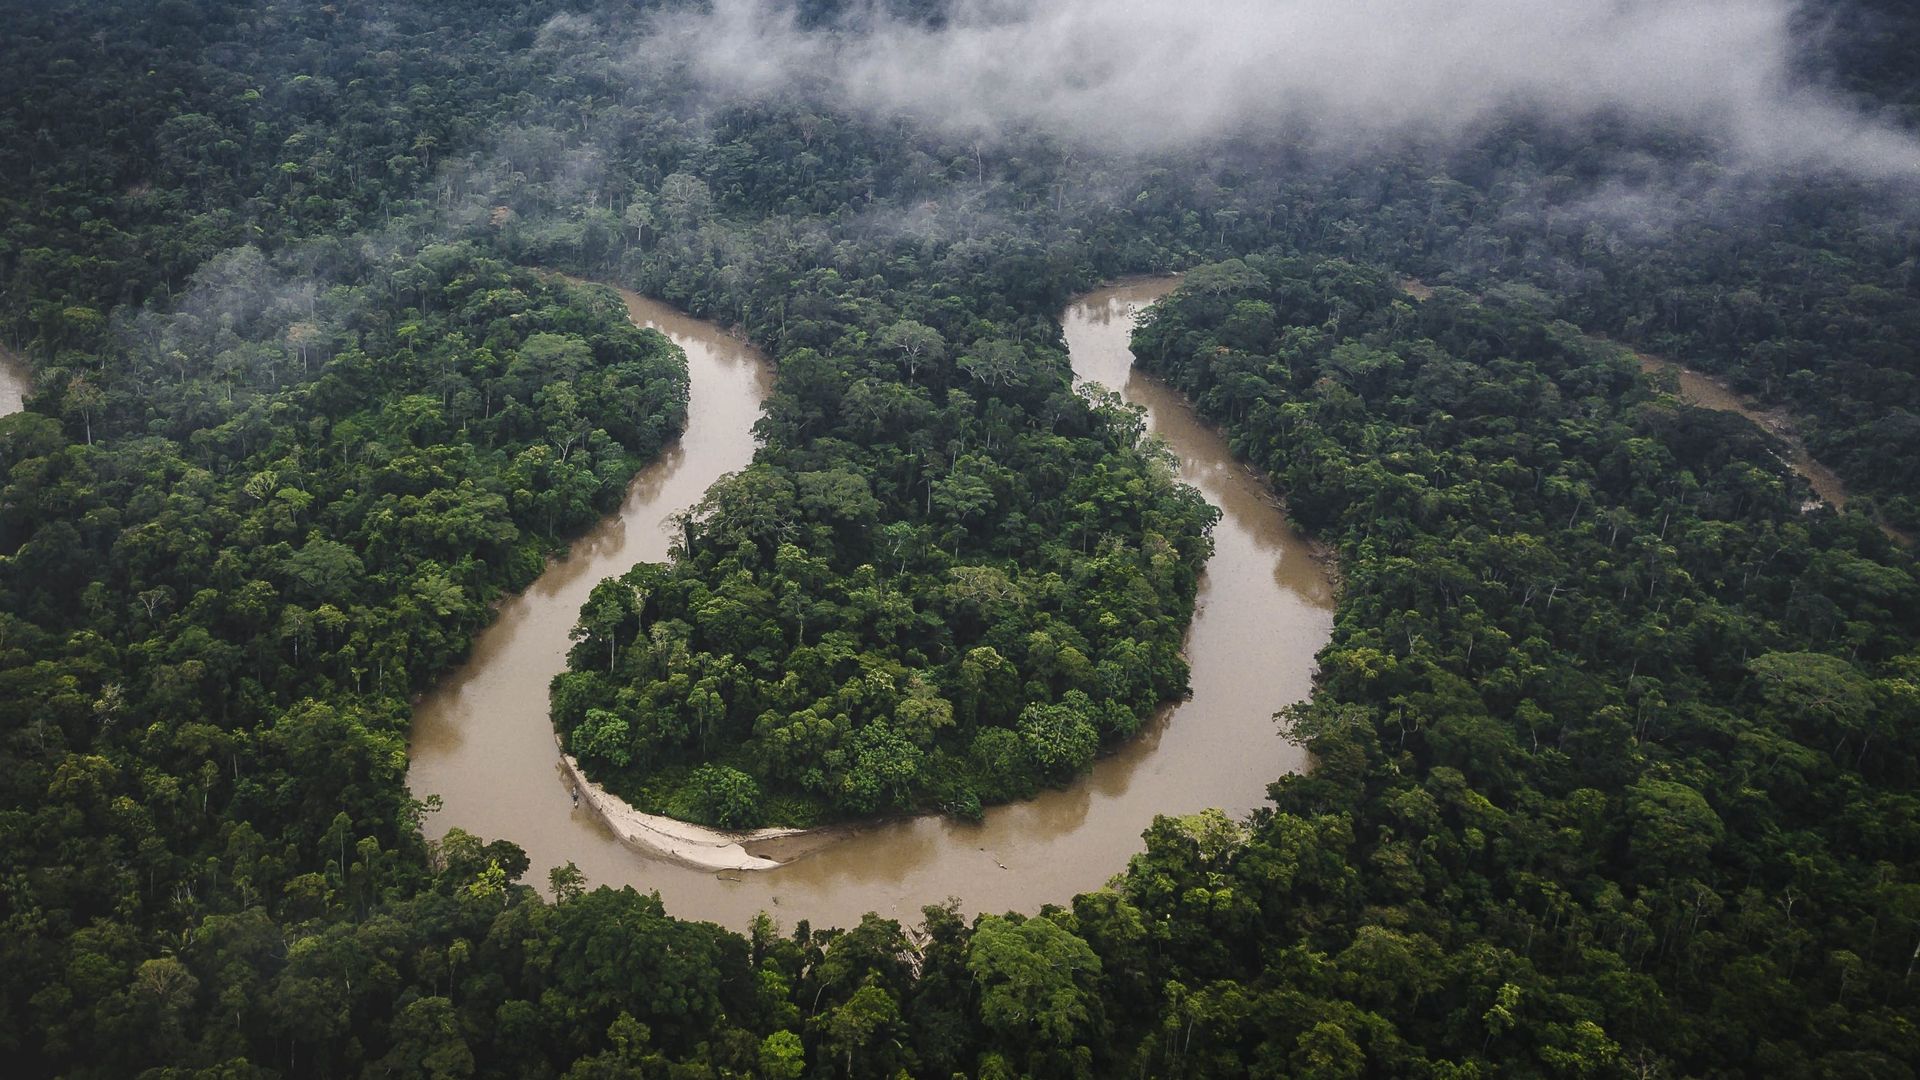 Le manque de pluie dans certaines zones d'Amazonie menace la survie des arbres de la forêt entière.